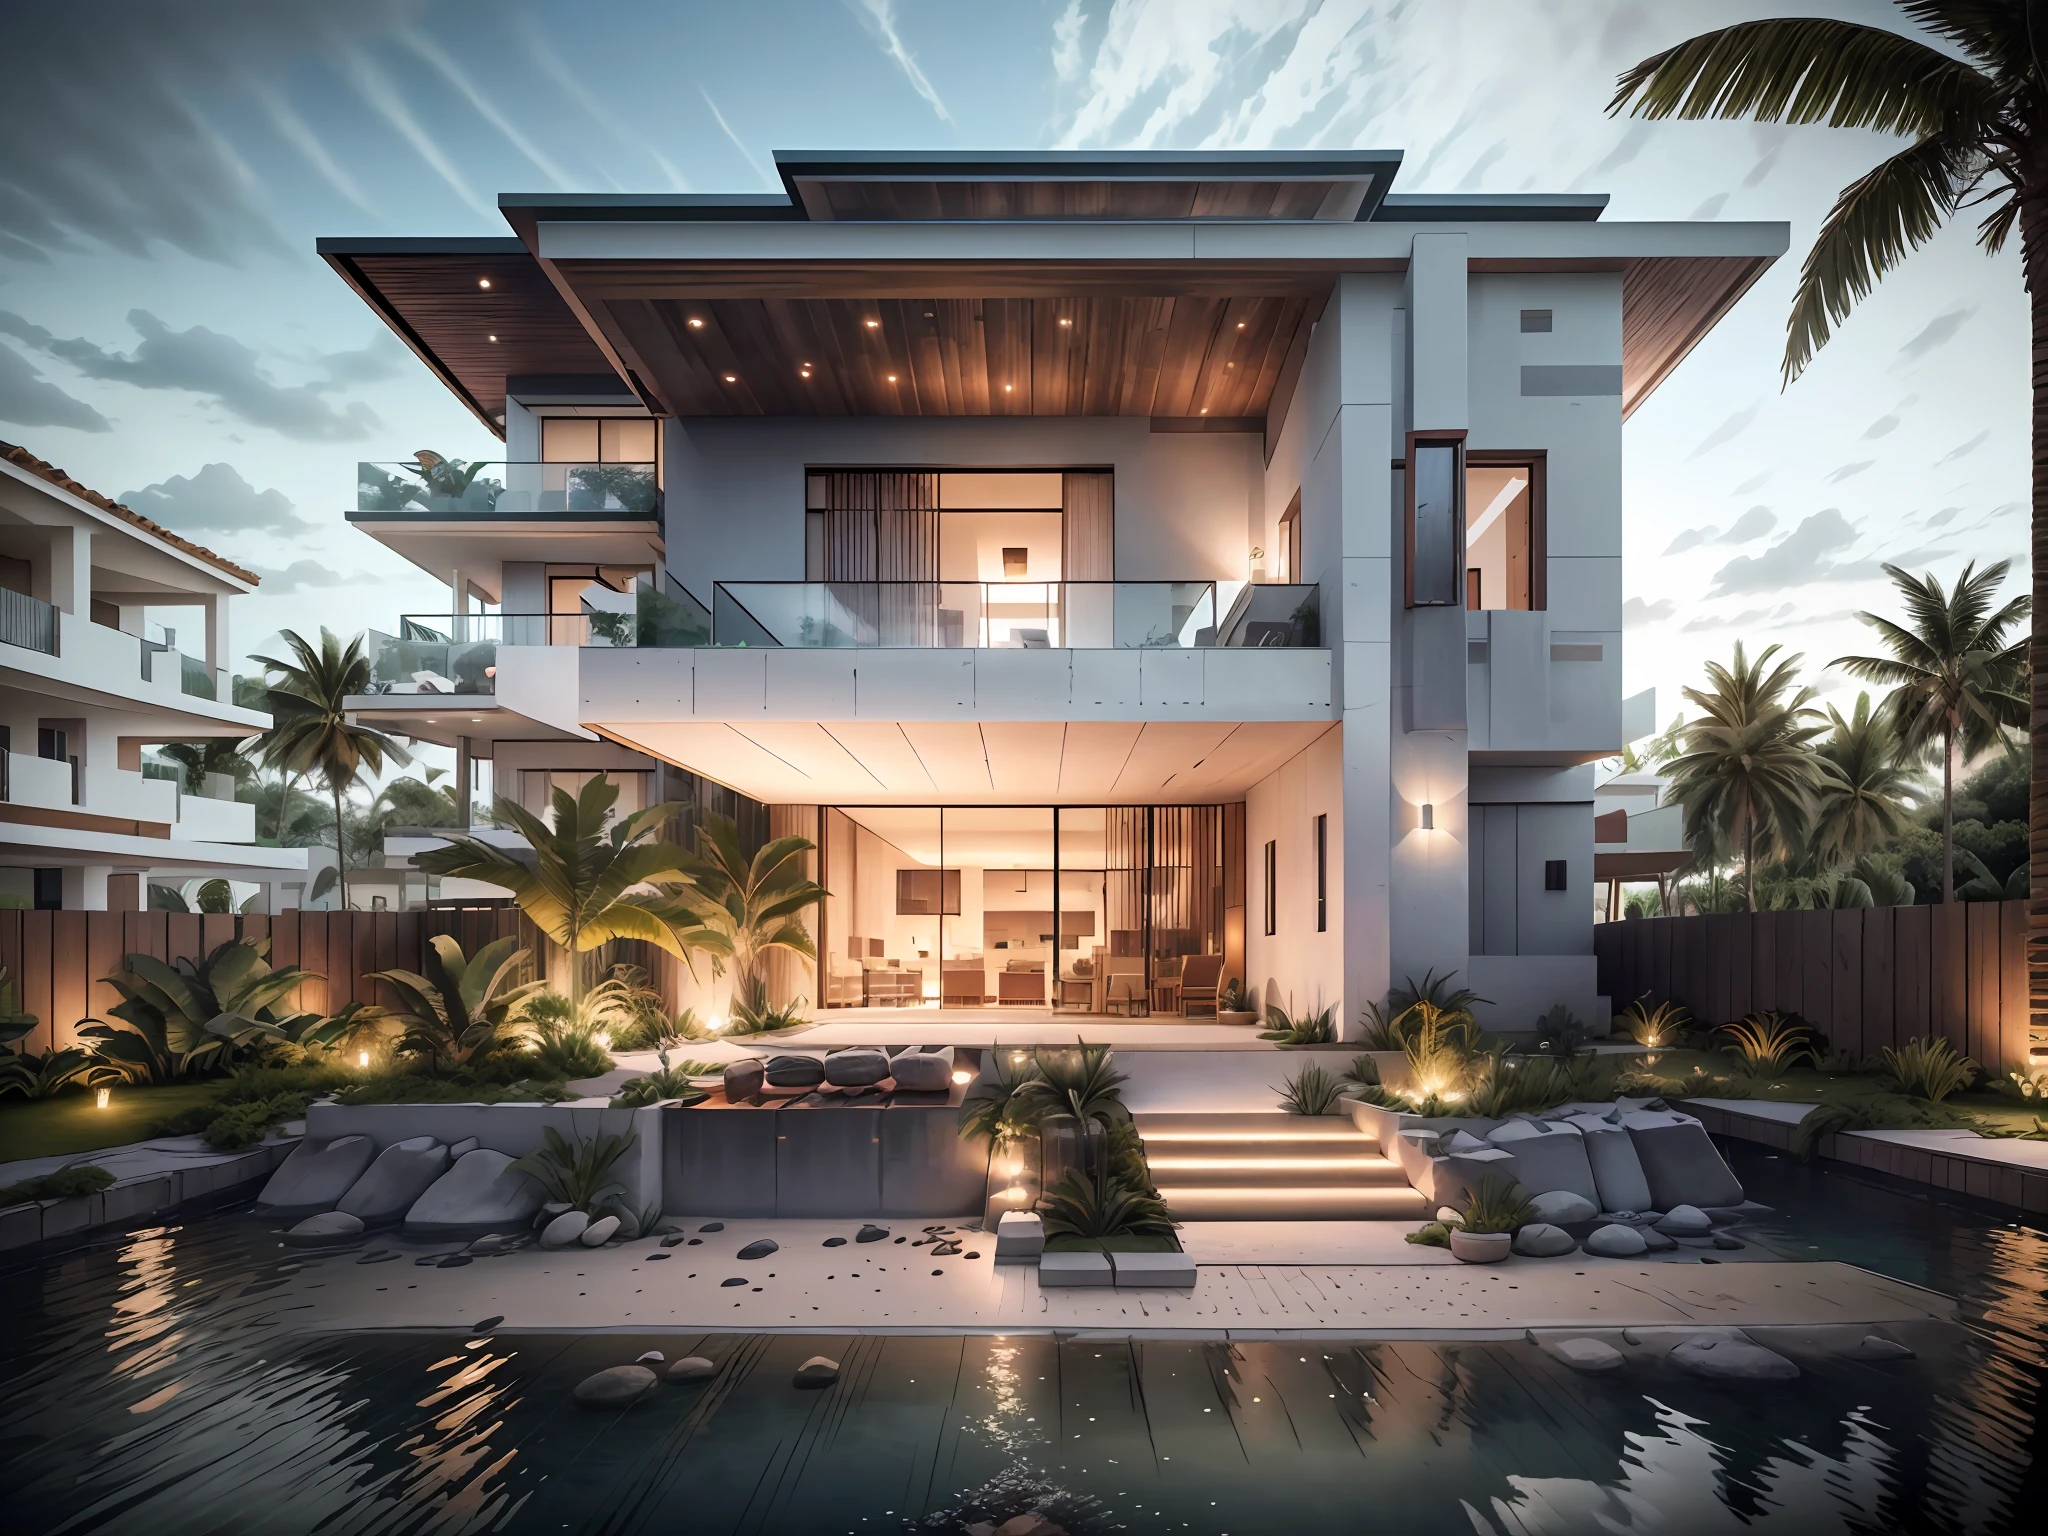 منزل بوهو, فيلا فاخرة على شاطئ البحر الكاريبي, فيلا زجاجية مفتوحة مع حديقة على السطح, حديث, متحرك (صورة خام, حقيقي, أفضل جودة, تحفة:1.2), (hyper حقيقيistic, photo-حقيقيistic:1.2), جودة عالية, (الإضاءة المظلمة:1.2), إضاءة مثالية, com.archdaily, ملخص الهندسة المعمارية الحائز على جائزة الهندسة المعمارية المستدامة, سينمائي